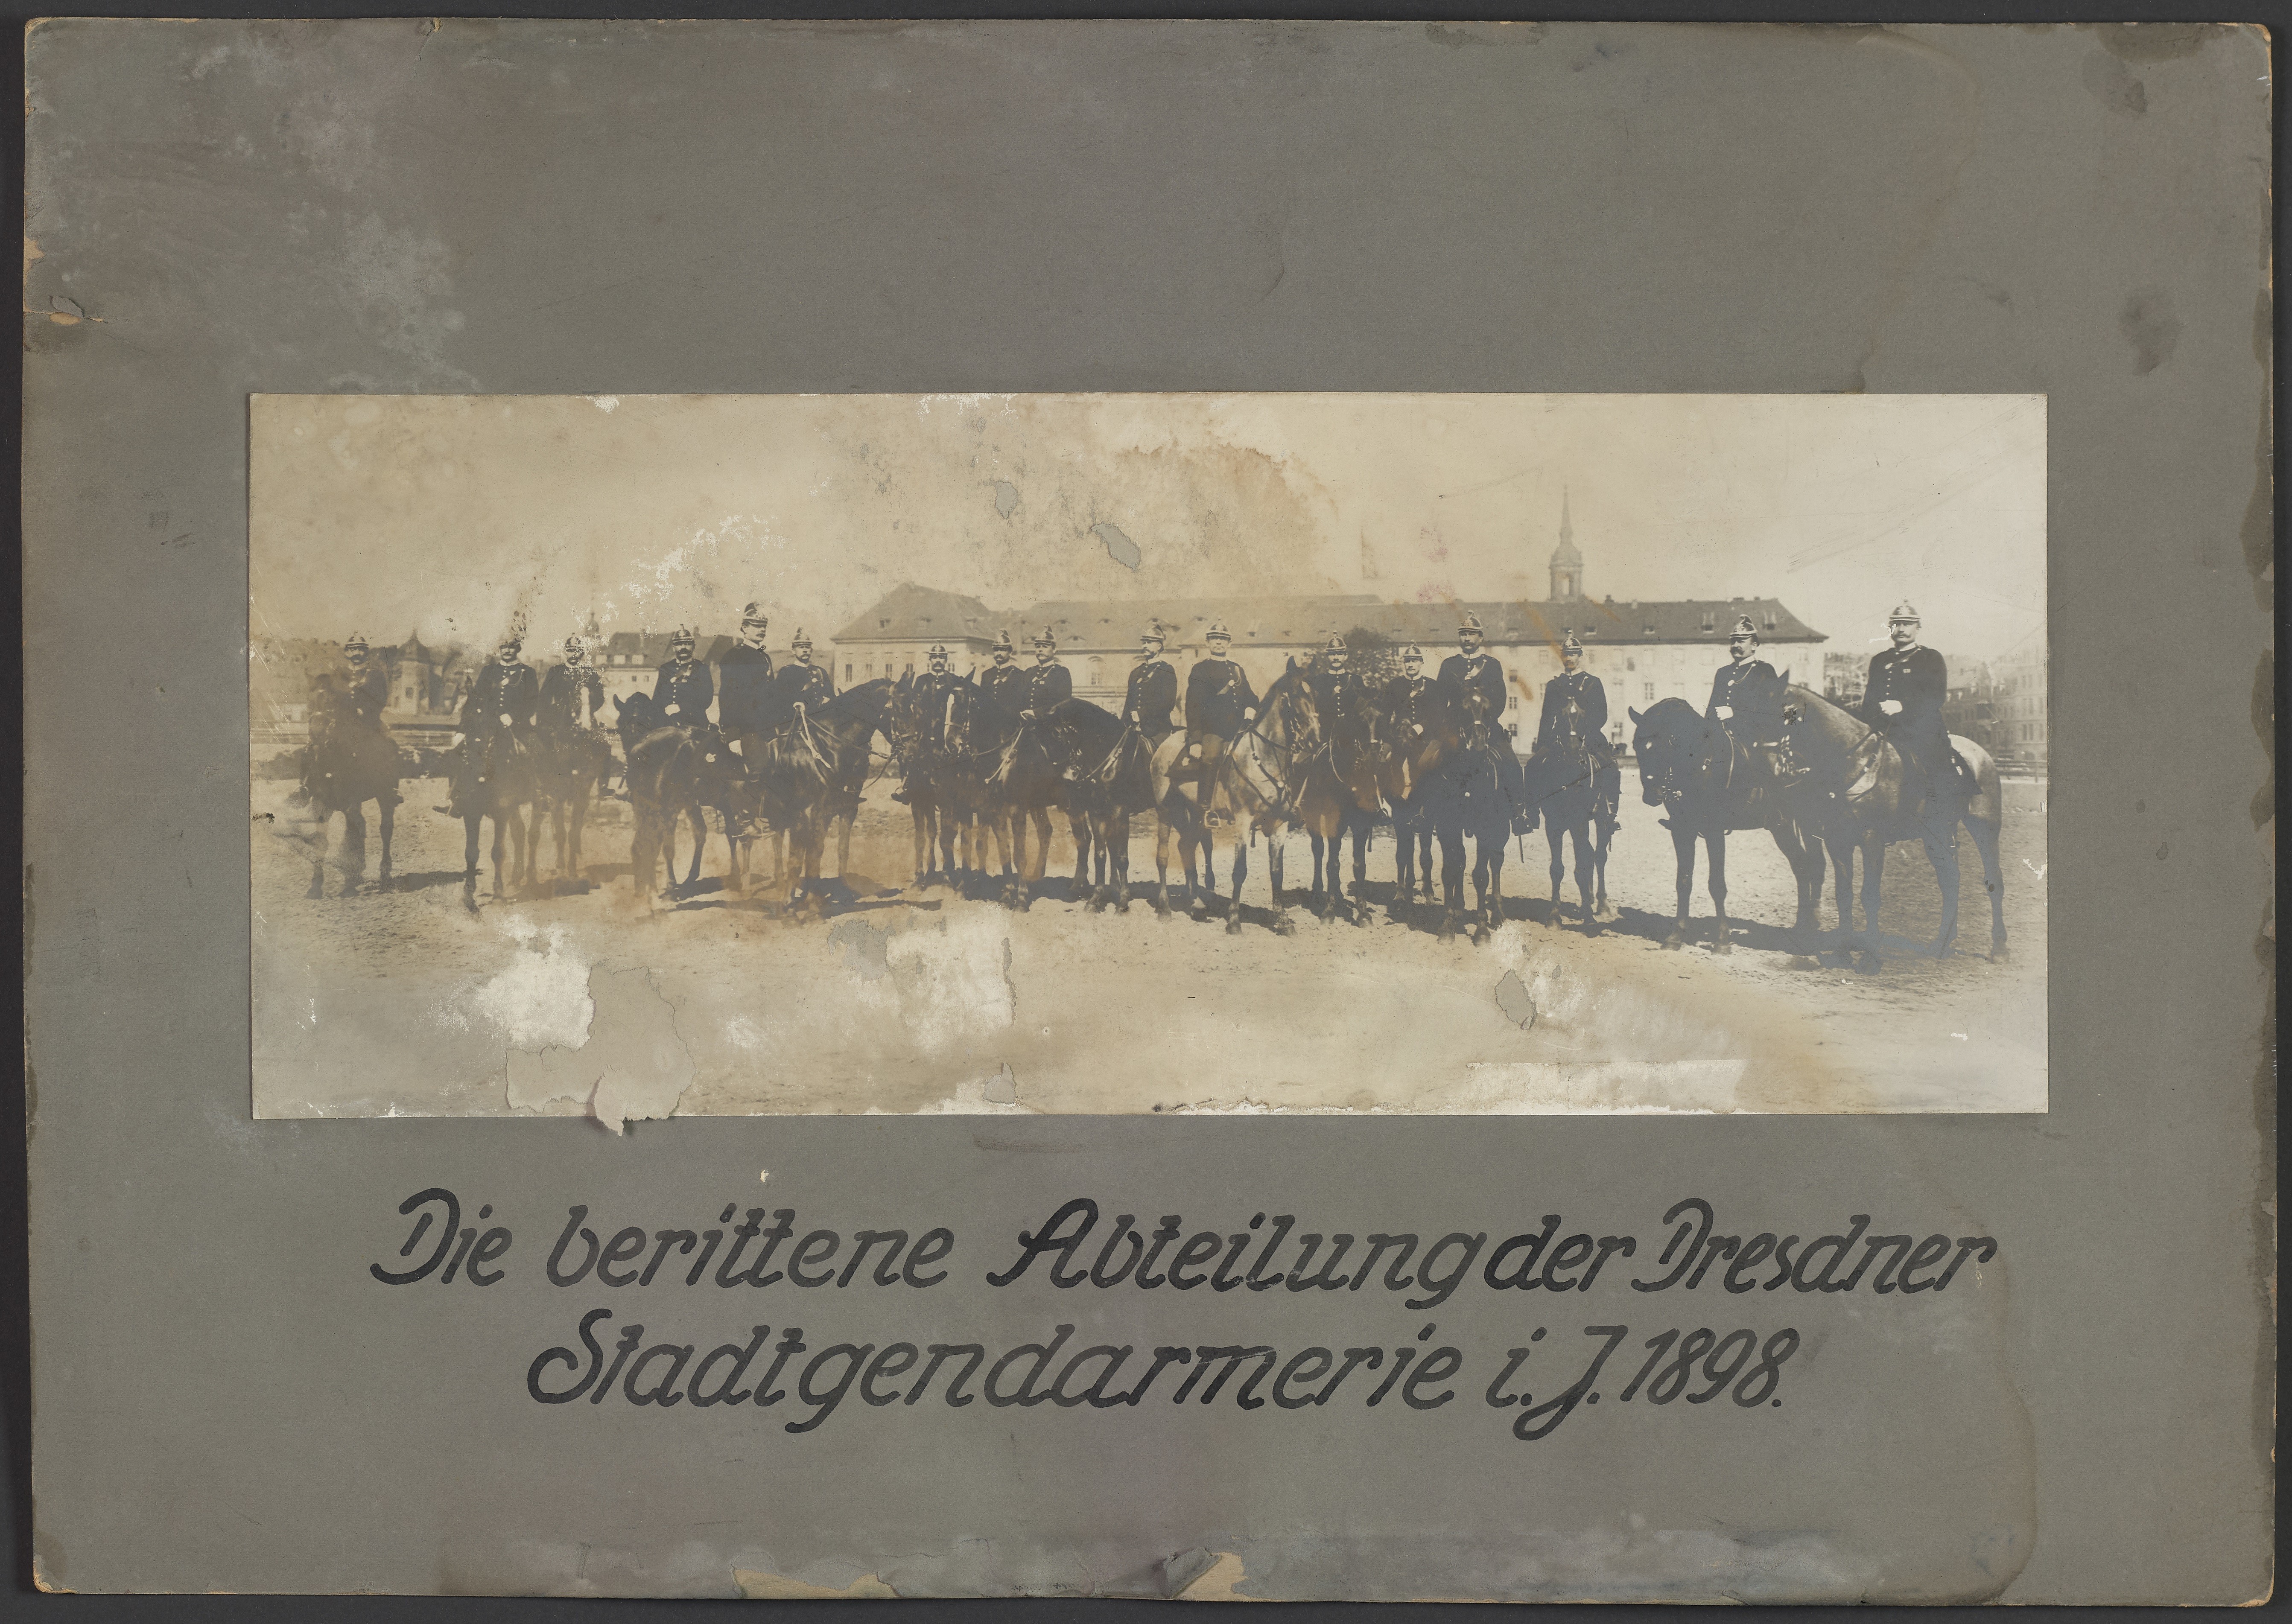 Lehrtafel "Berittene Abteilung Dresdner Stadtgendarmerie 1898" (Polizeidirektion Dresden RR-F)